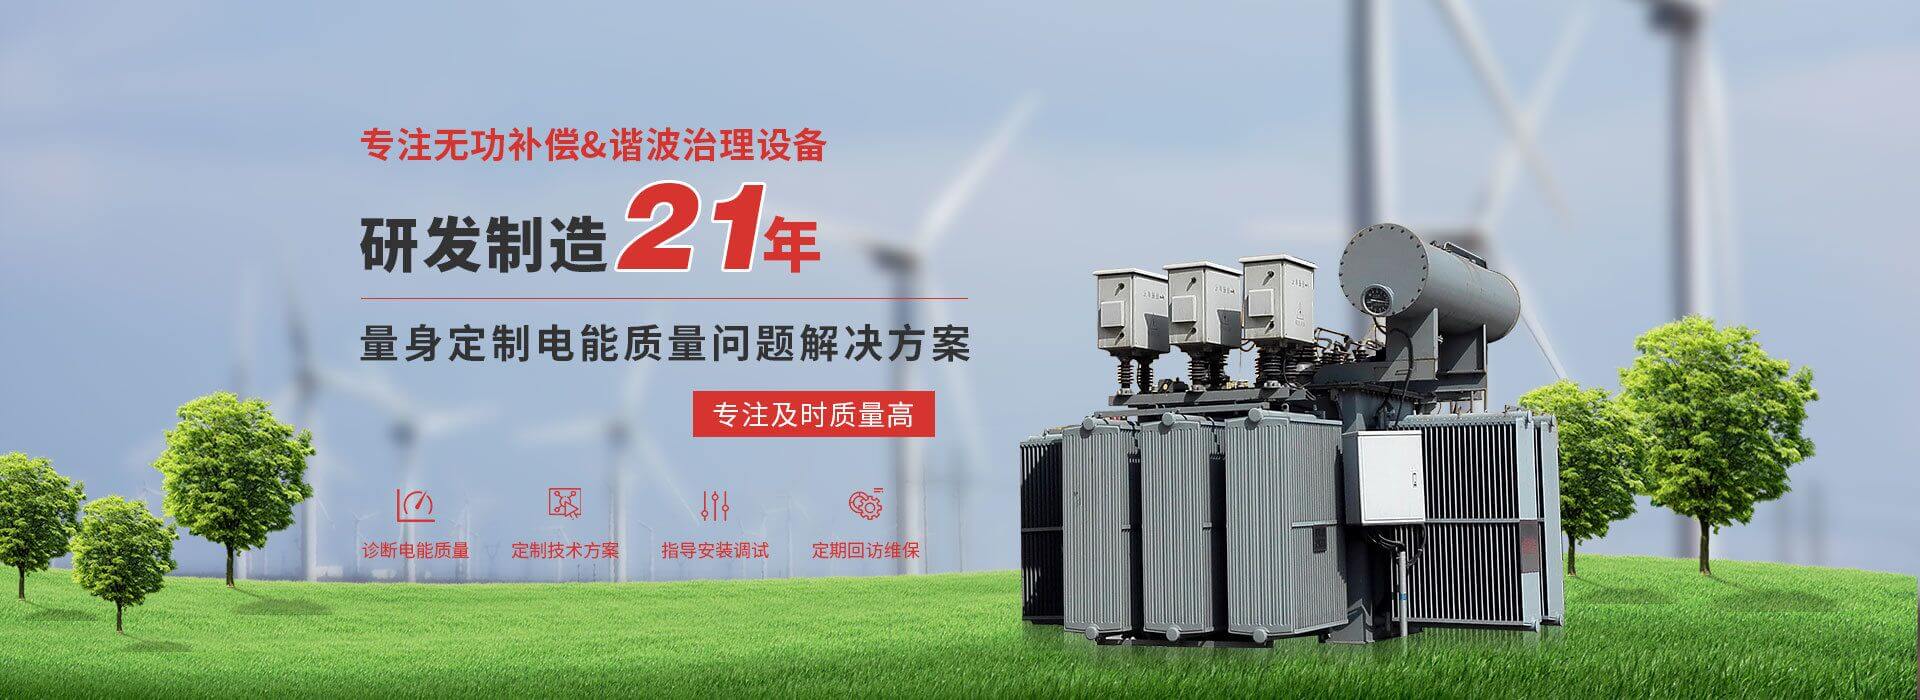 杭州bat365在线平台设备有限公司